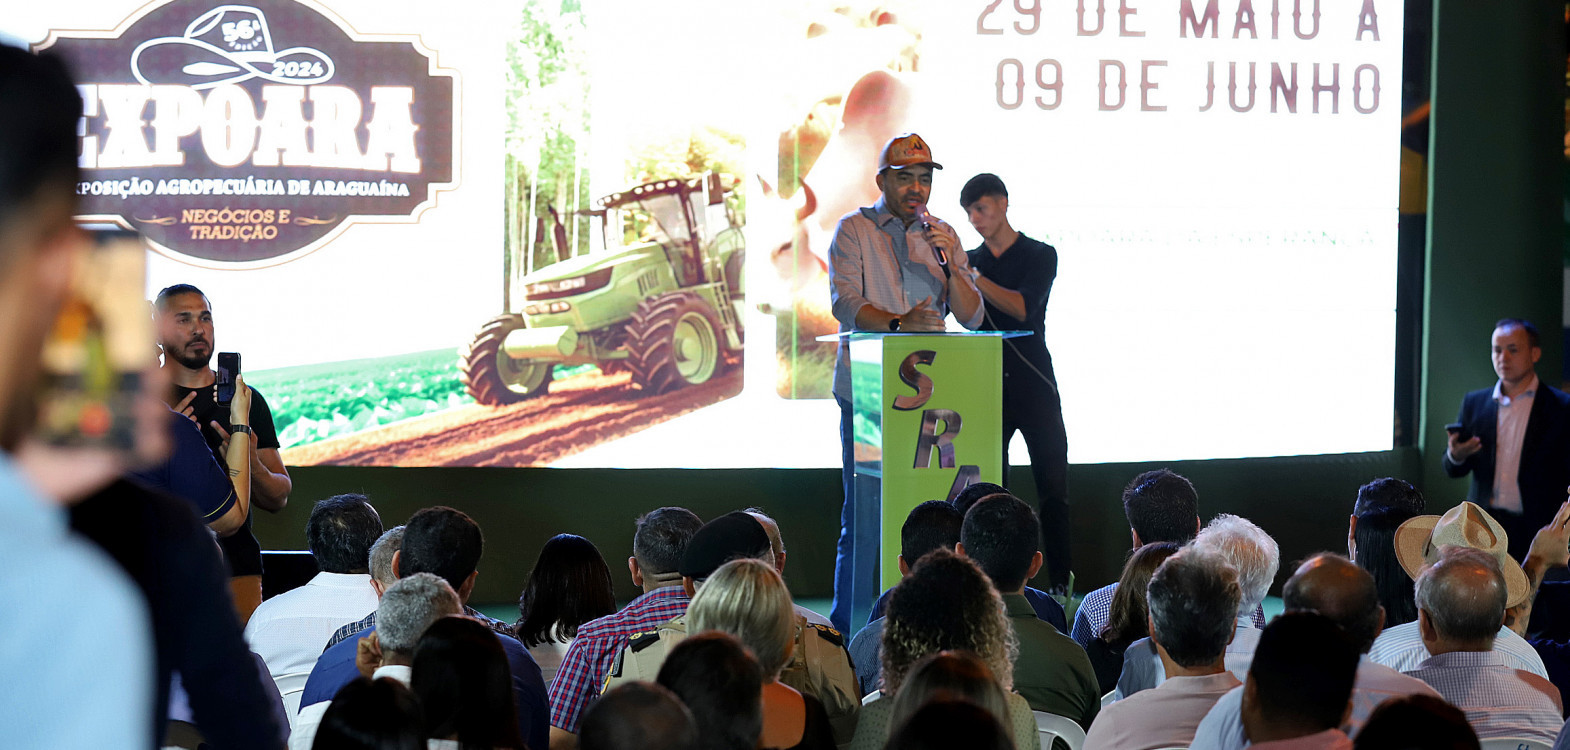 Na abertura oficial da Expoara, o governador Wanderlei Barbosa destacou o compromisso da gestão com o setor agropecuário e a promoção de um ambiente de negócios seguro e sustentável